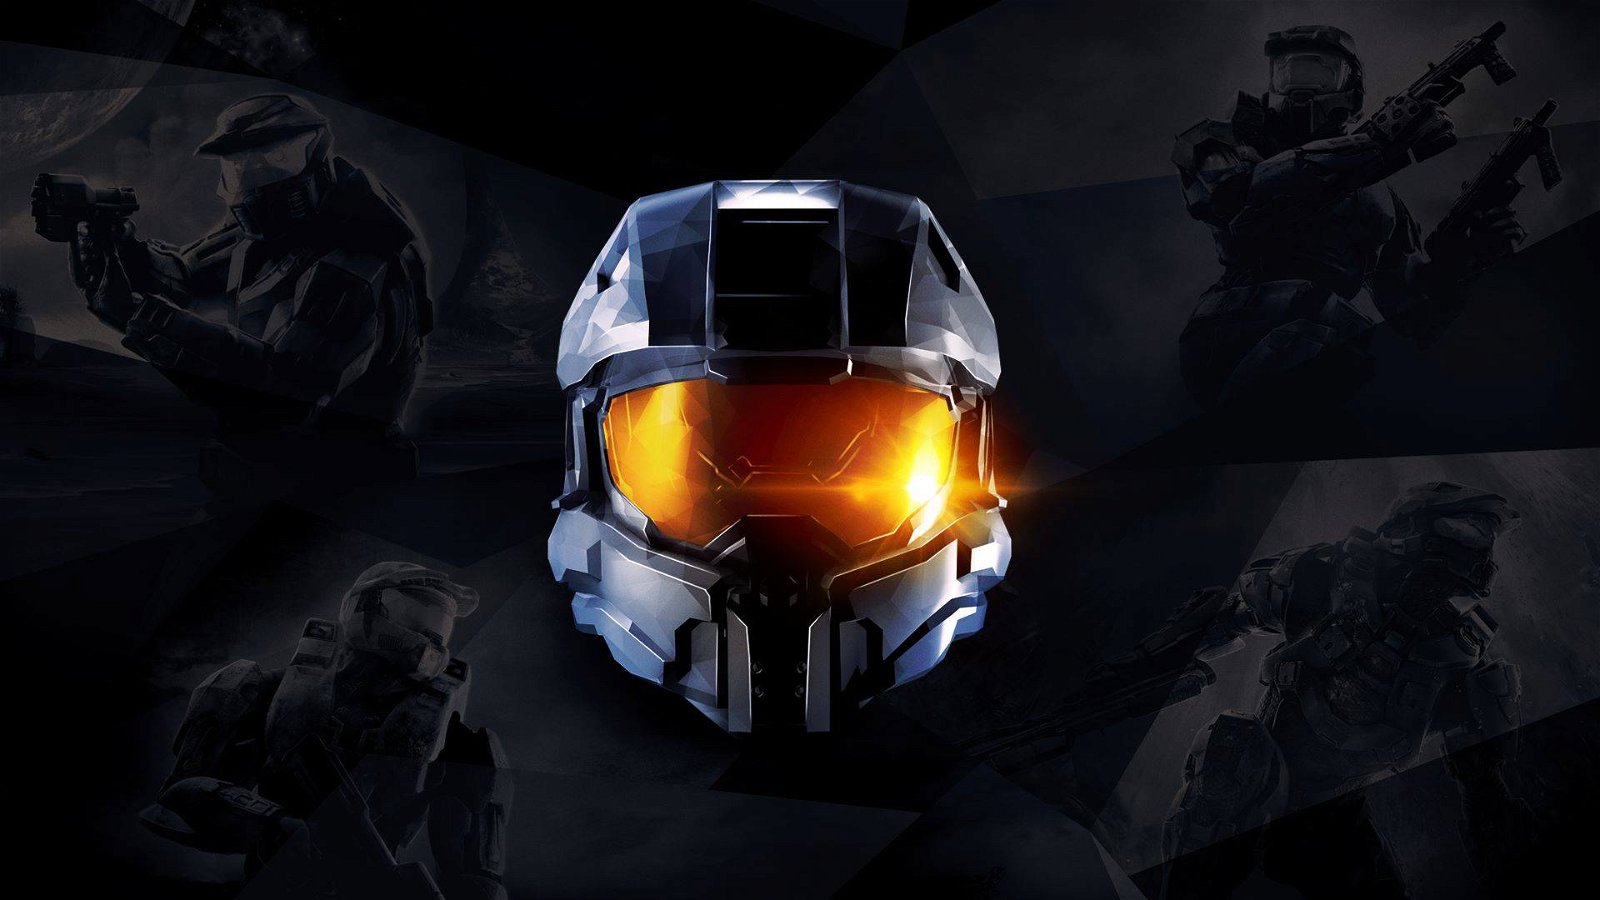 Immagine di Halo: The Master Chief Collection, 343 Industries preannuncia novità